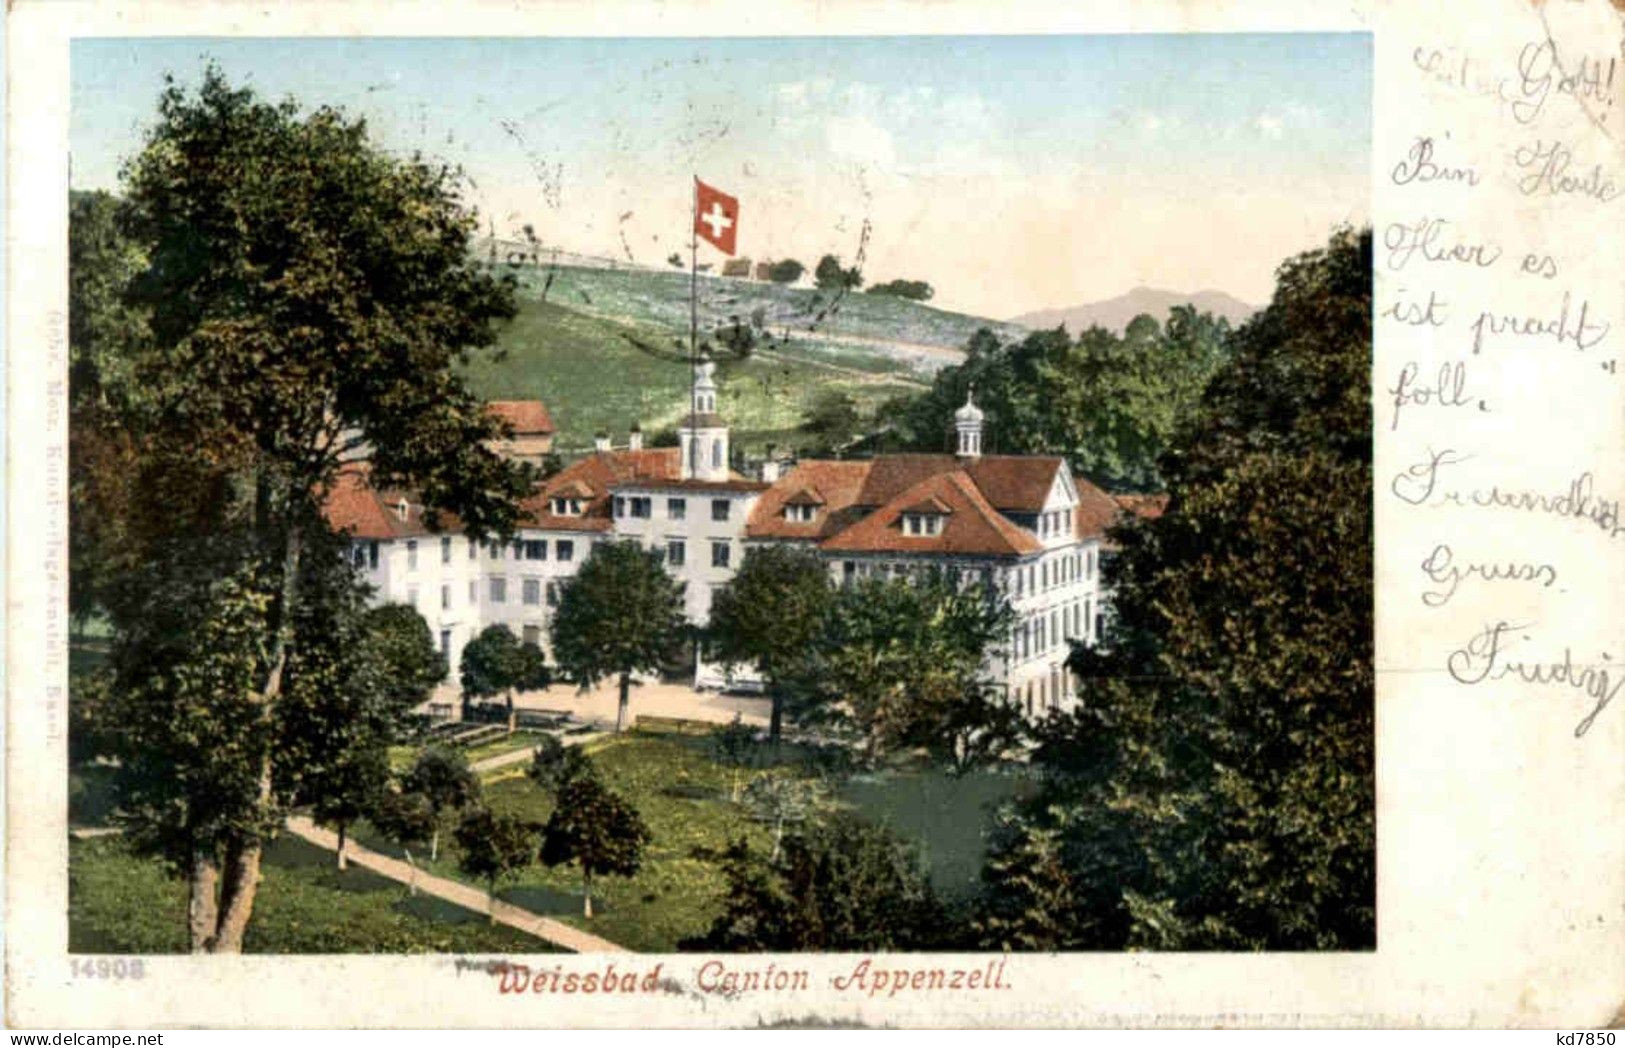 Weissbad - Weissbad 